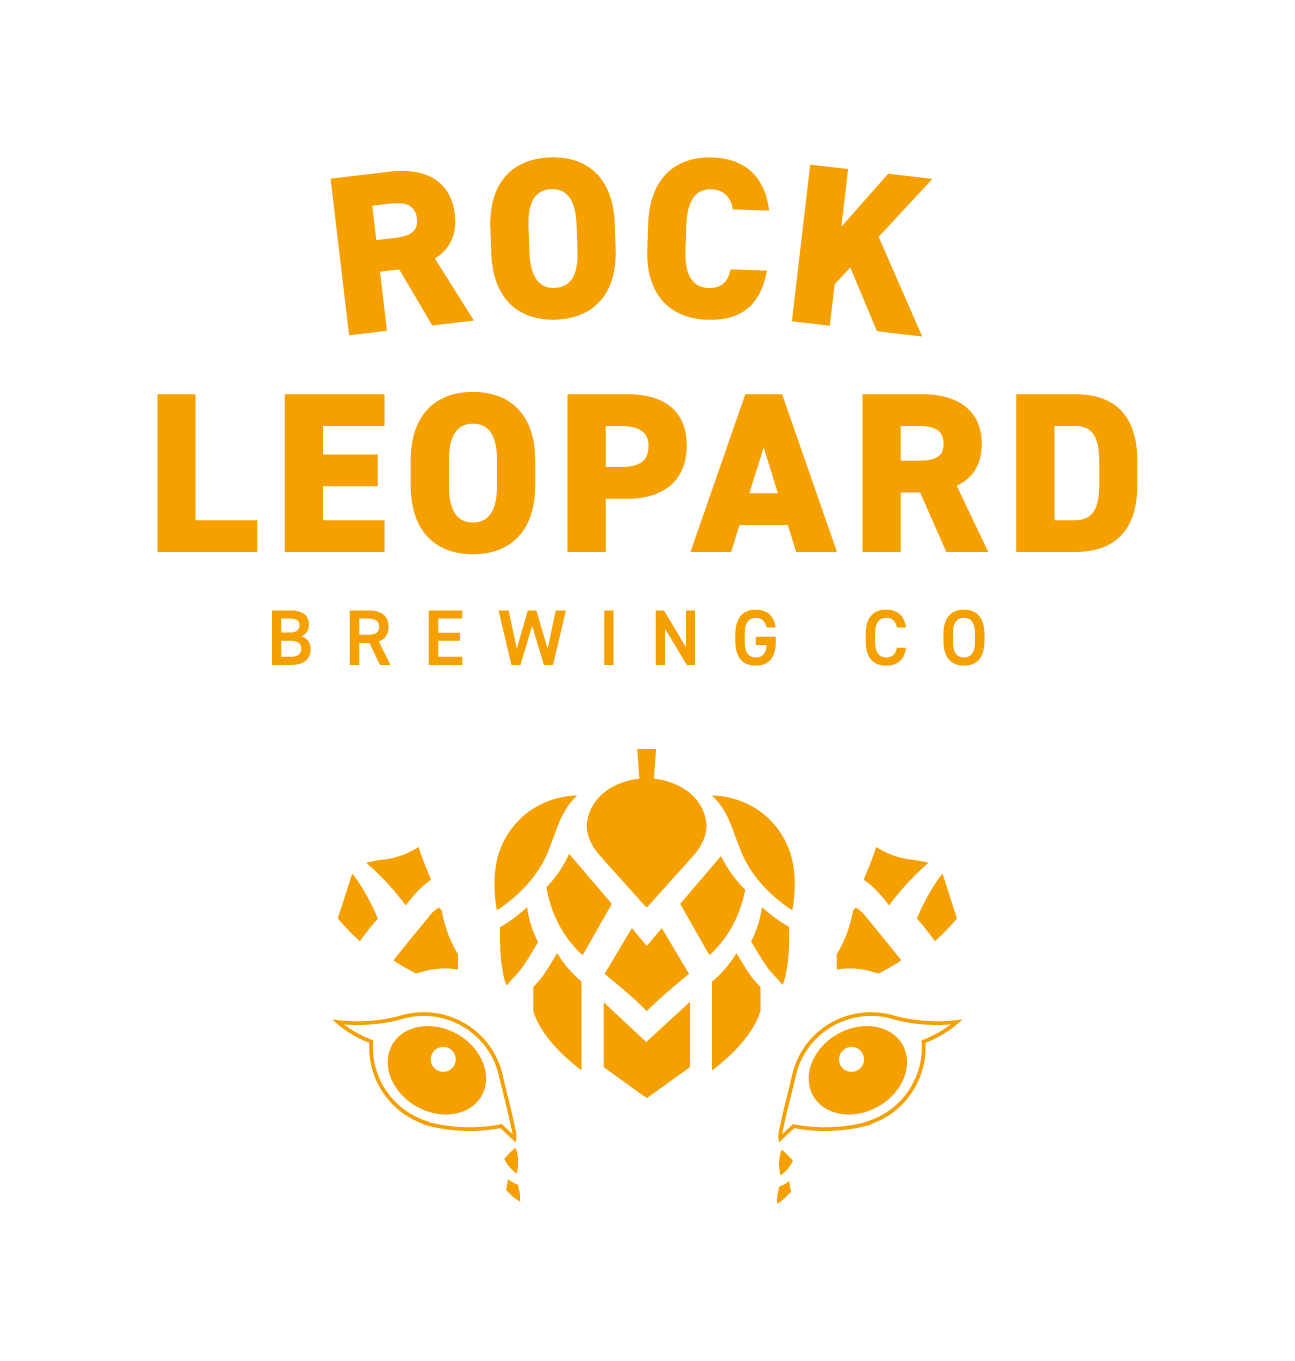 Rock Leopard Brewing Co